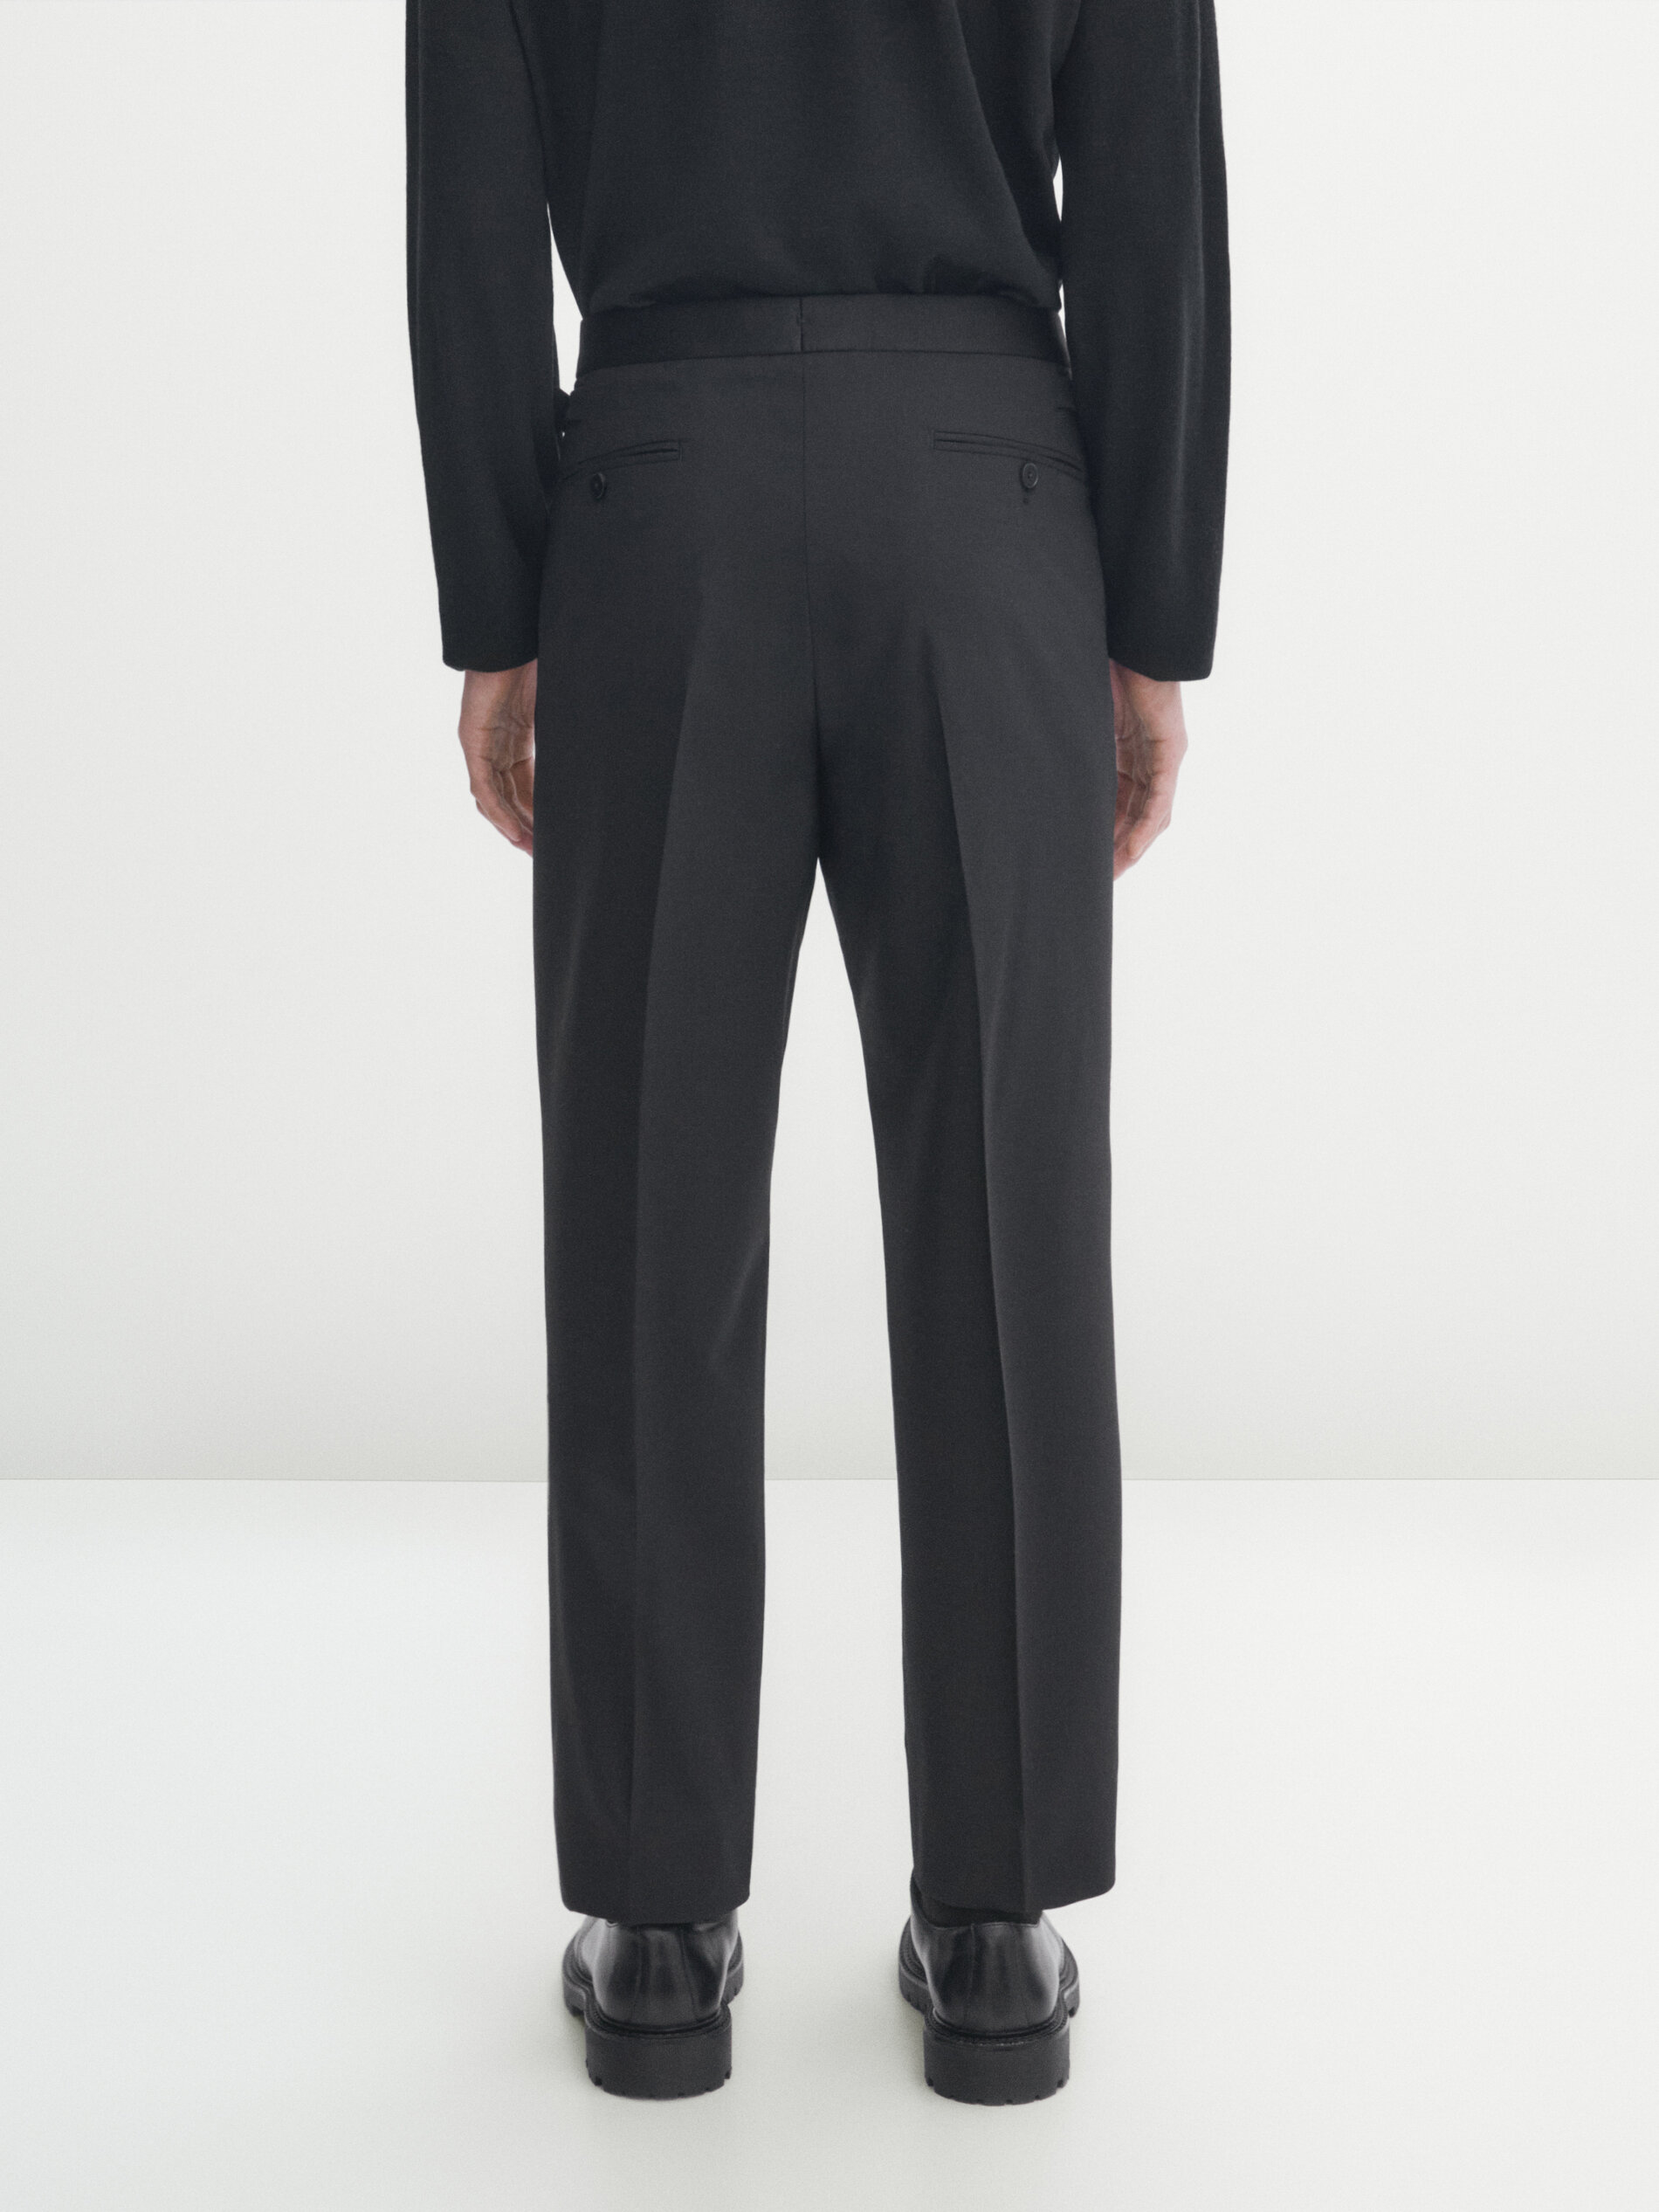 Genius Tuxedo Trousers Black at CareOfCarl.com